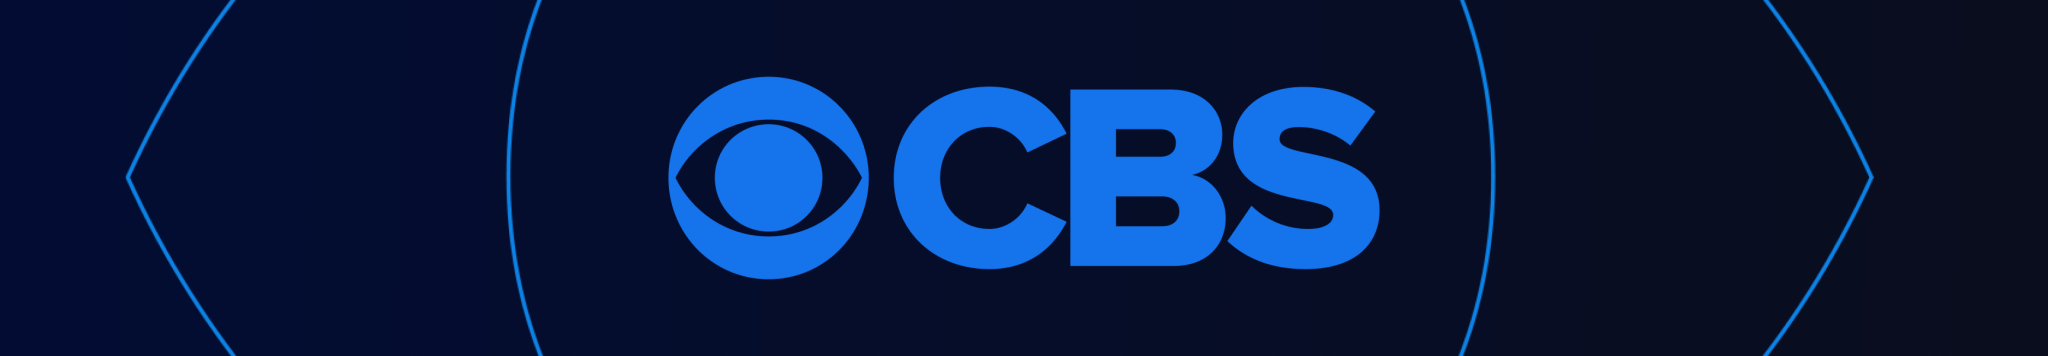 CBS Entertainment Accesorios